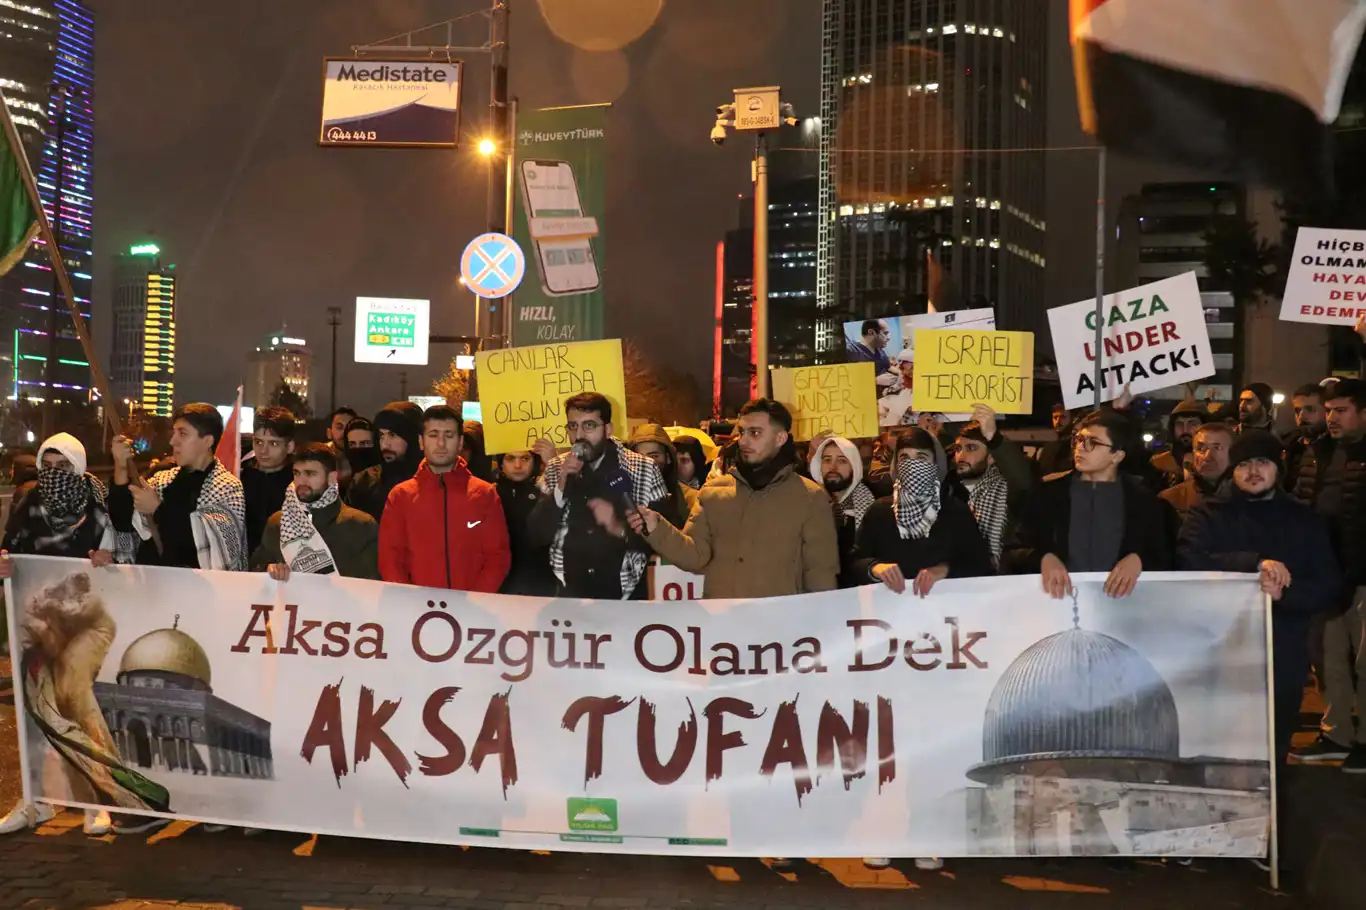 HÜDA PAR İstanbul İl Gençlik Kollarından Filistin halkına sahip çıkılması çağrısı